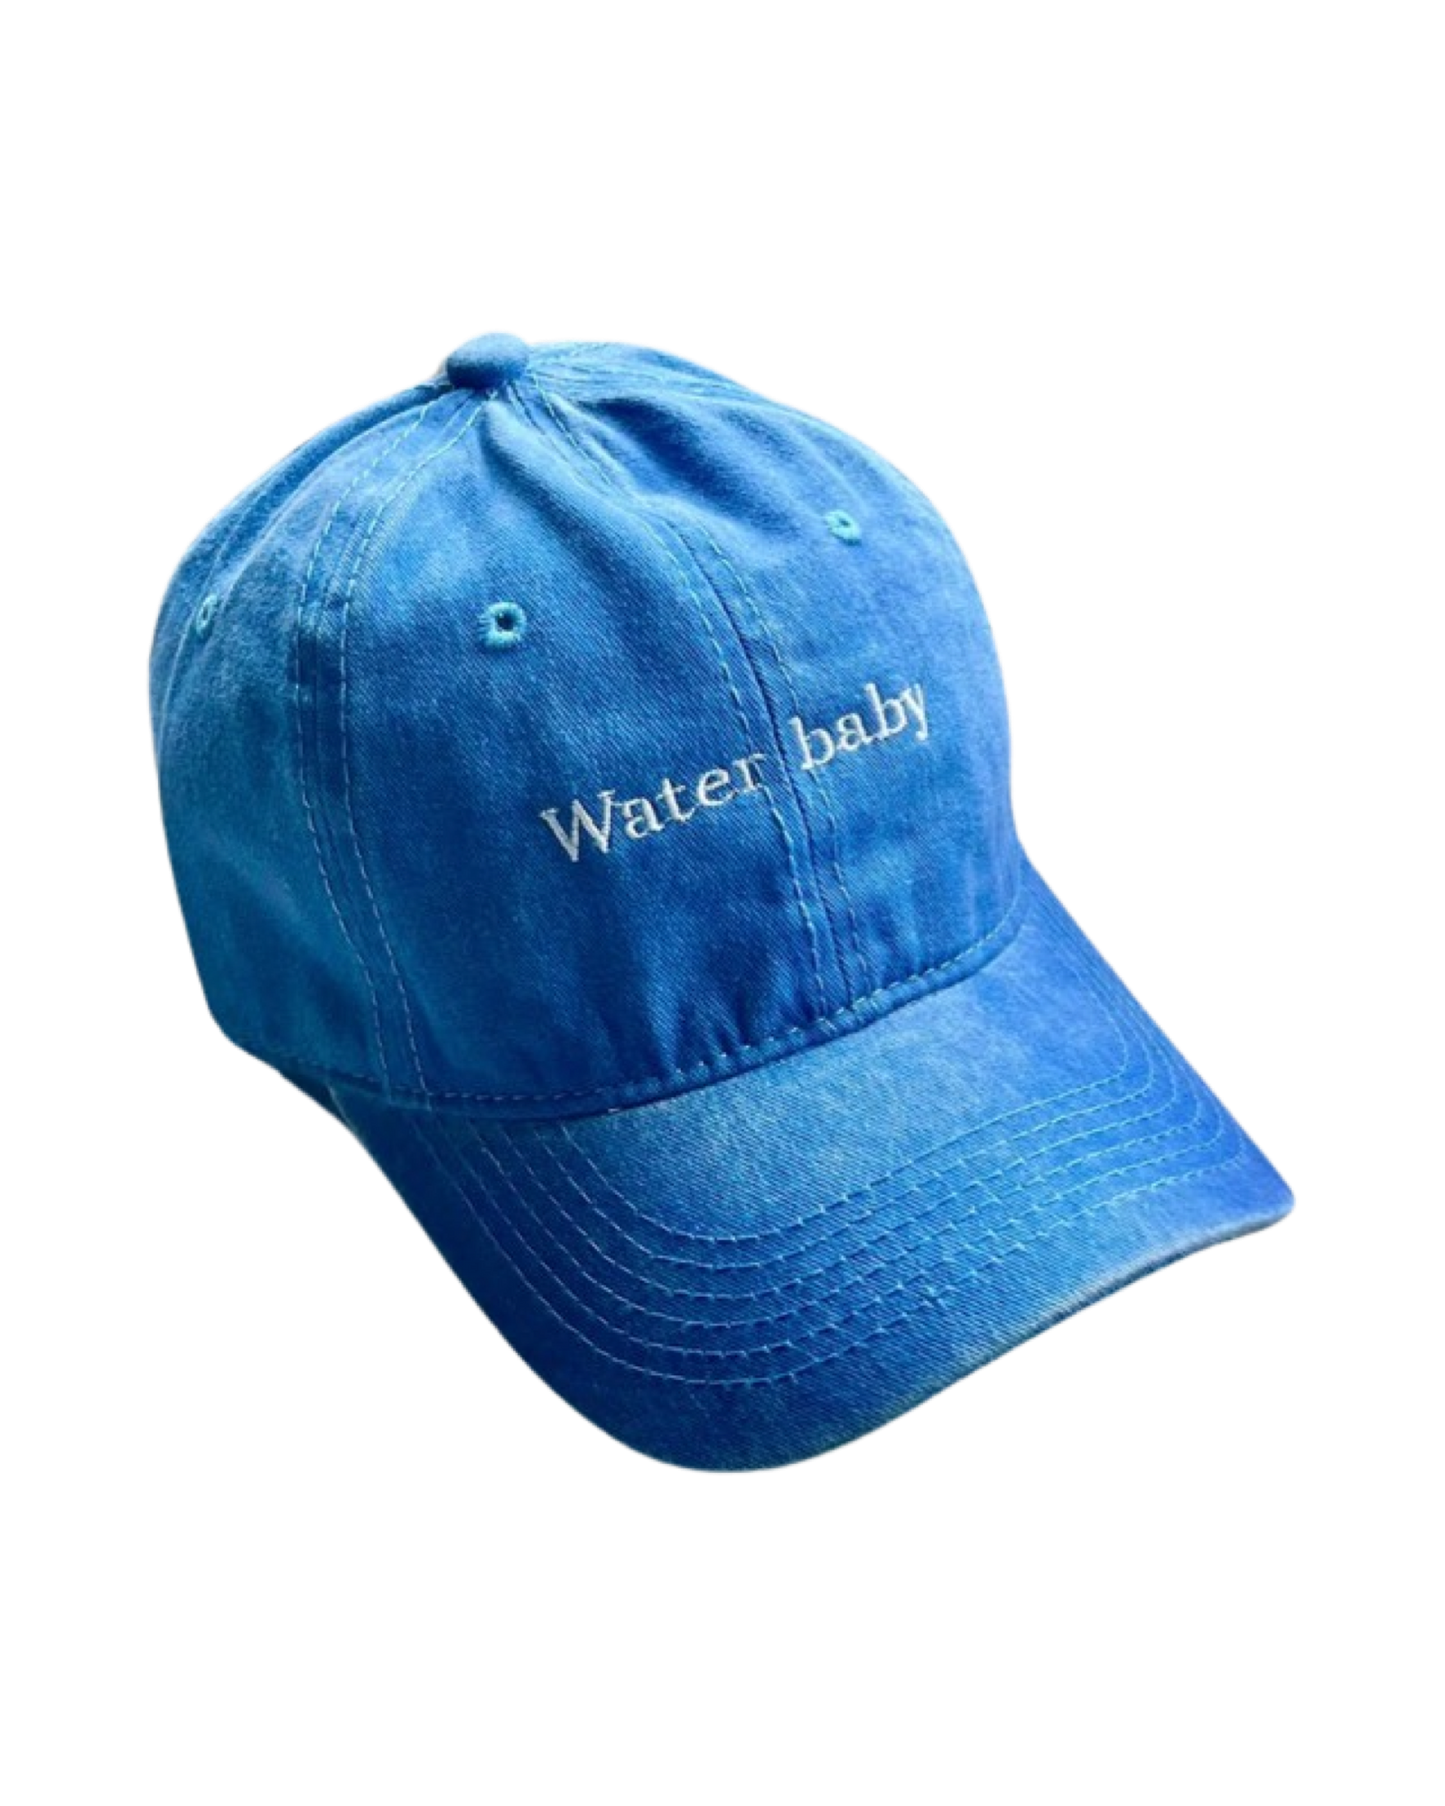 Water baby Cap